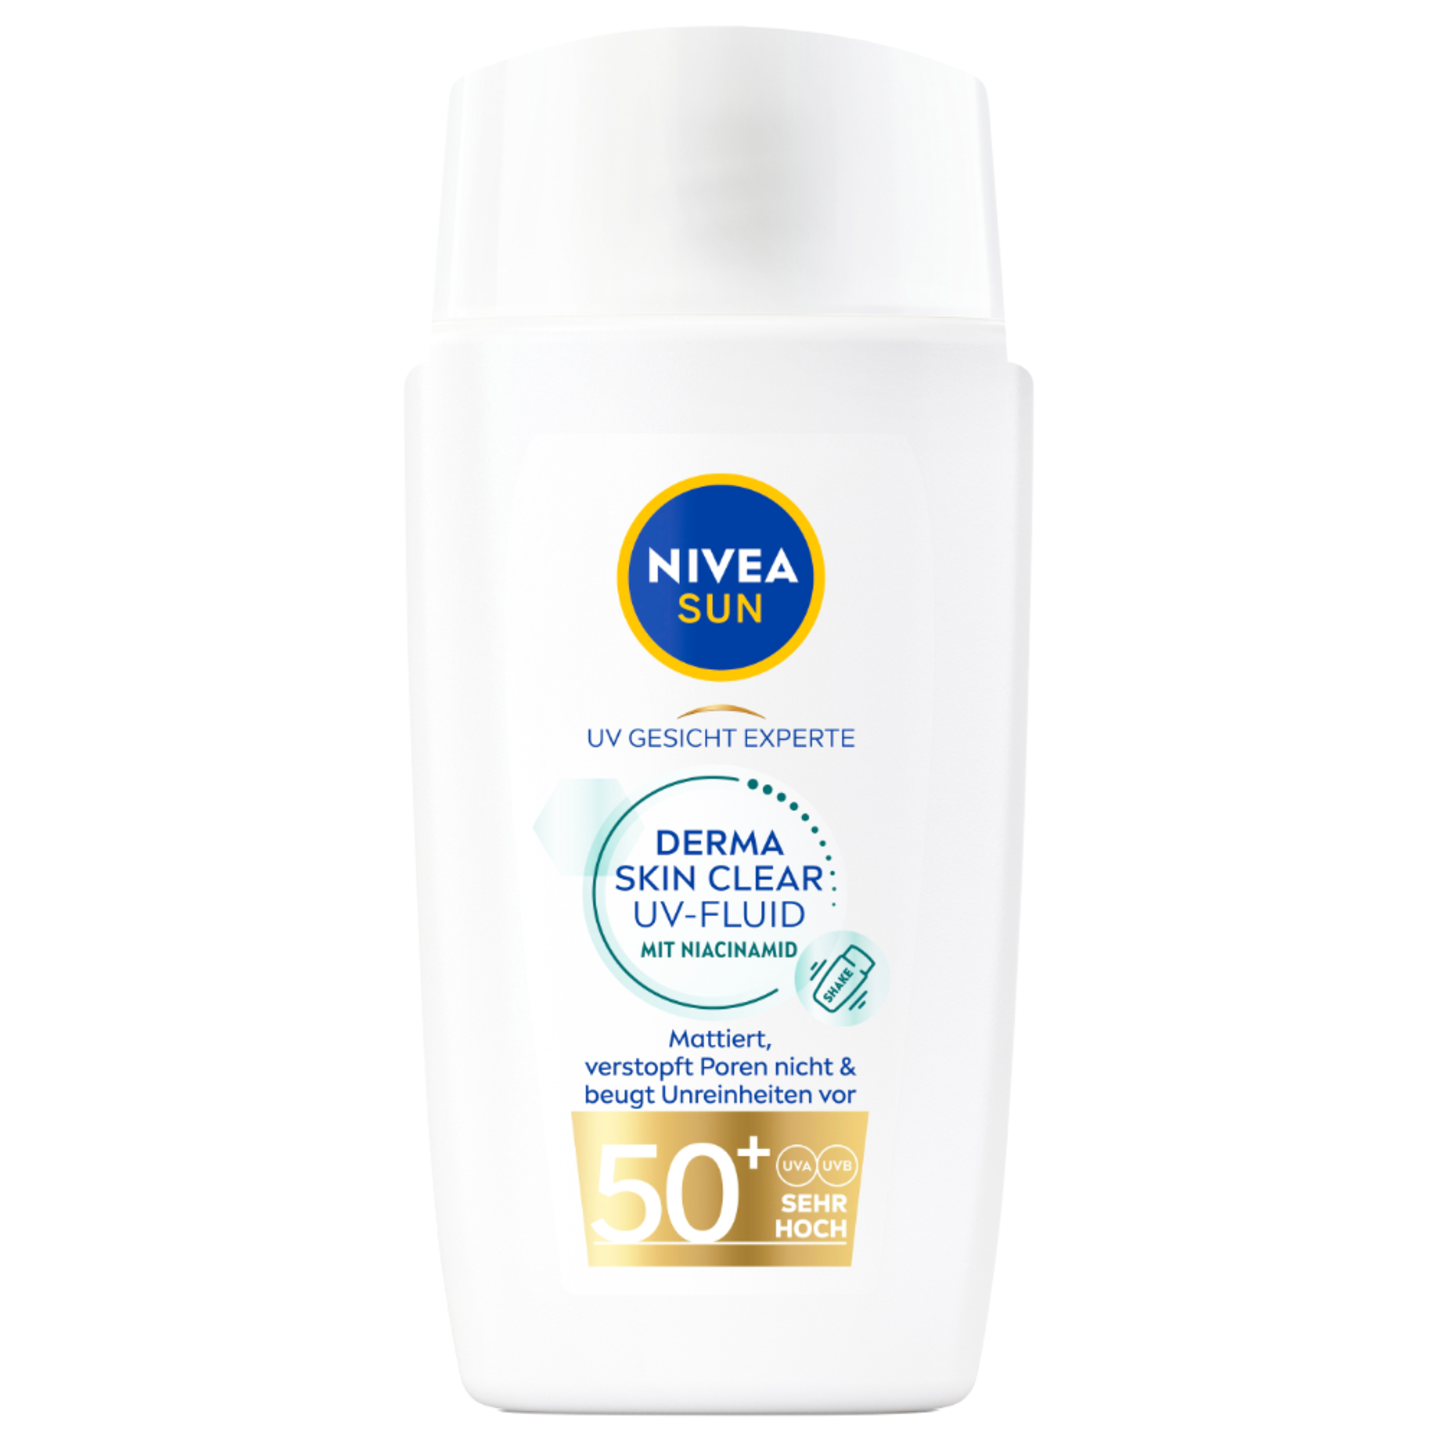 Regulativ: "Derma Skin Clear UV-Fluid mit Niacinamid LSF 50+“ von Nivea, ungefähr 14 Euro.